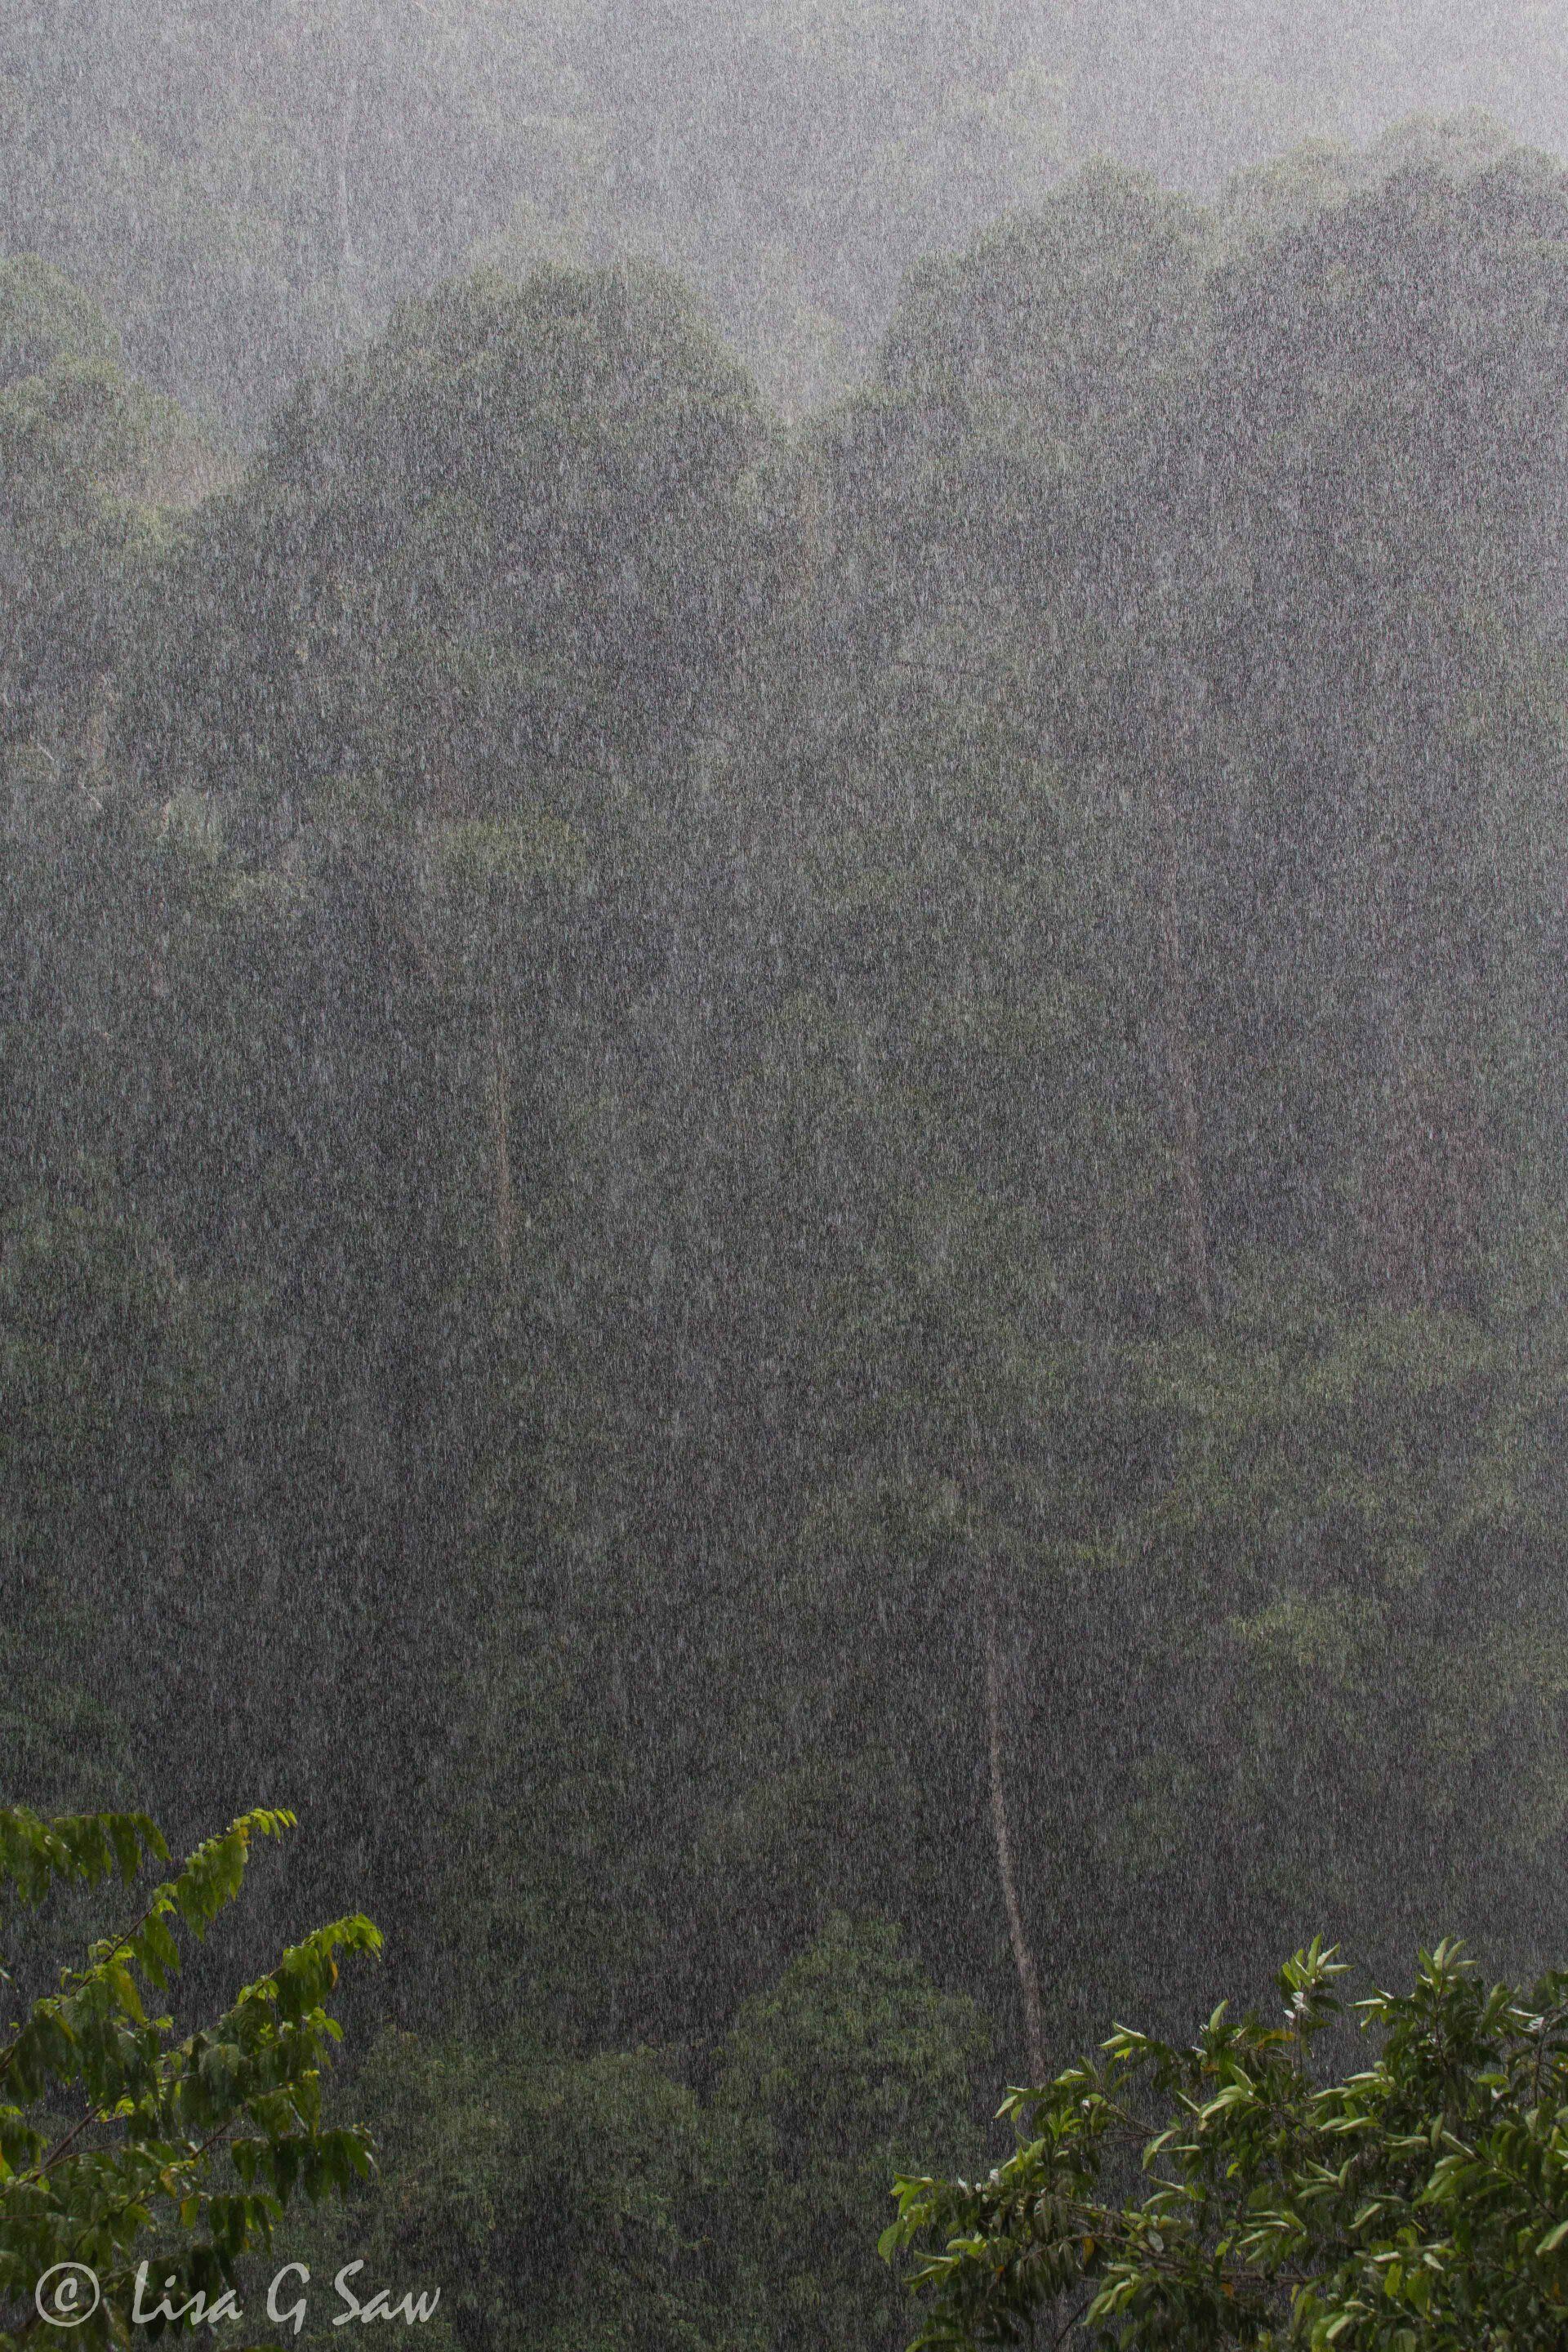 Torrential rain in Danum Valley jungle